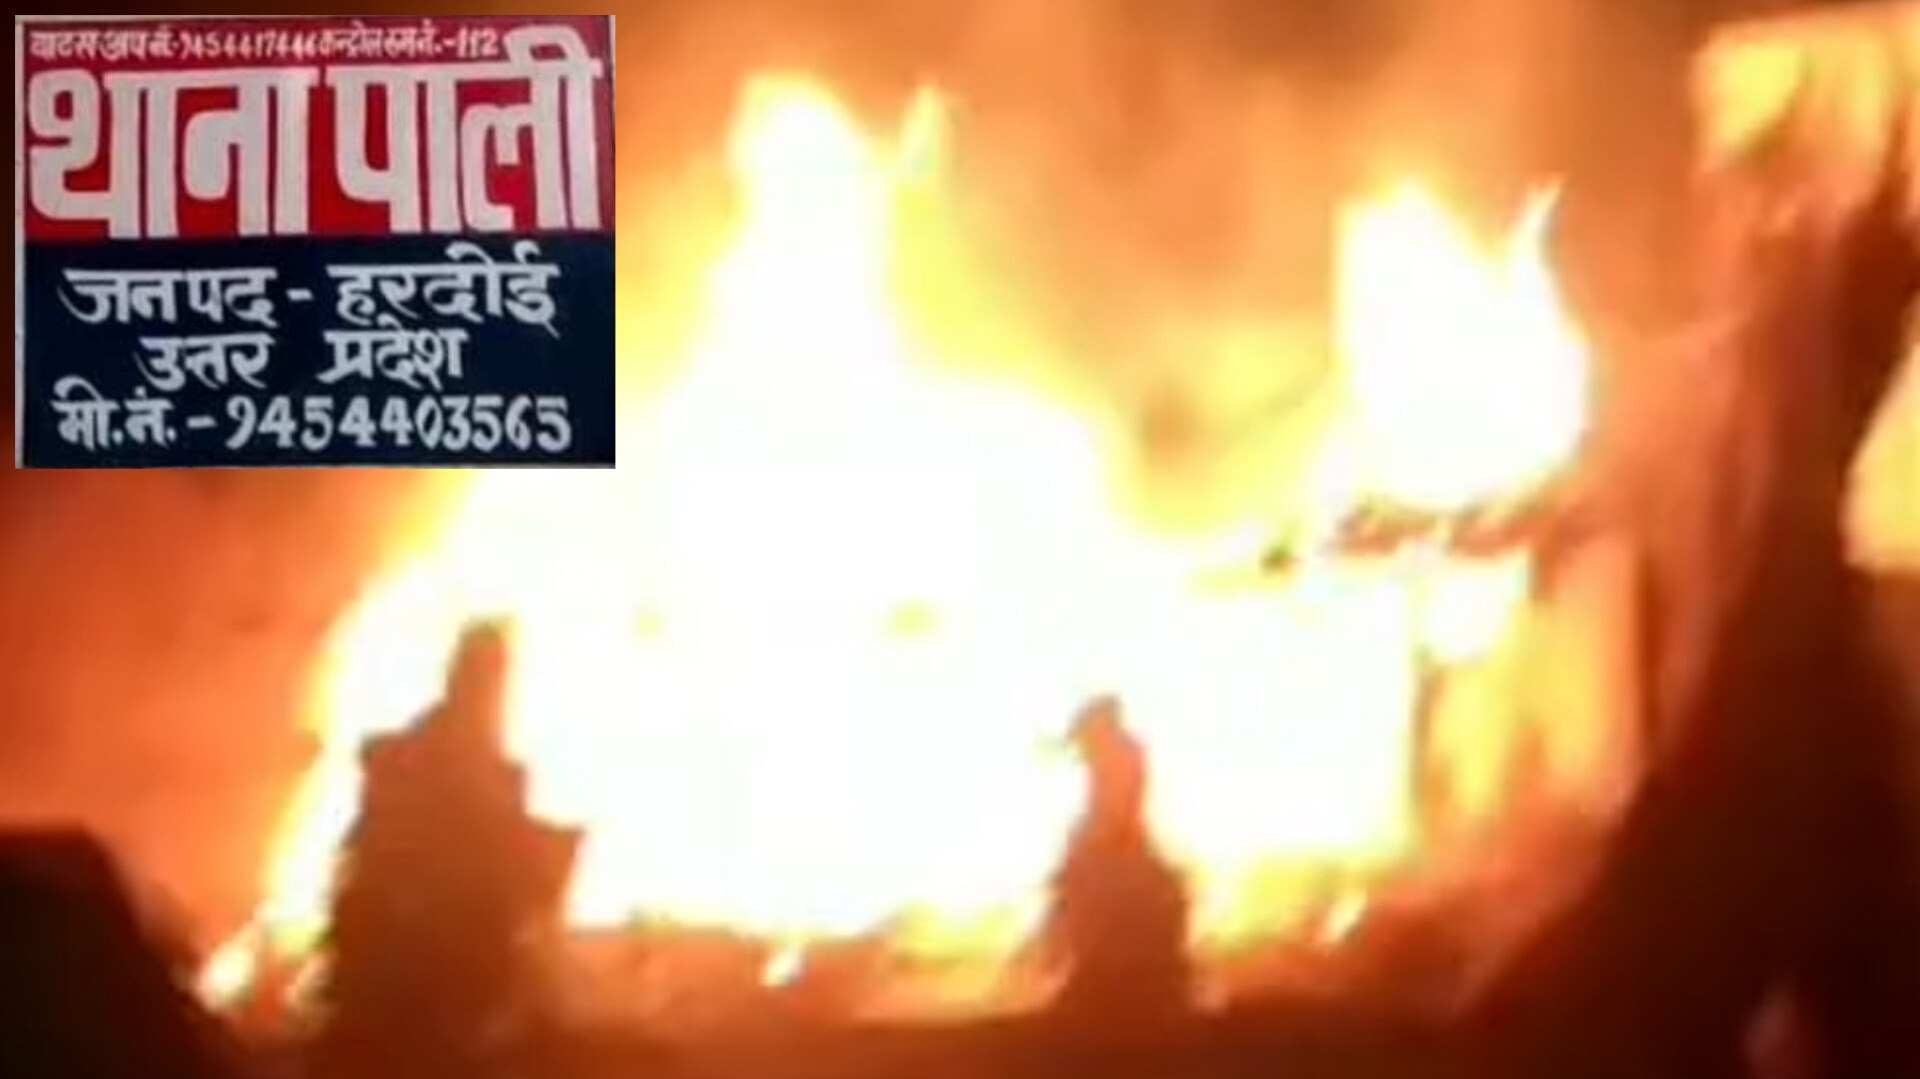 हरदोई में अज्ञात कारणों से झोपड़ी में लगी आग, नगदी और गृहस्थी जलकर राख